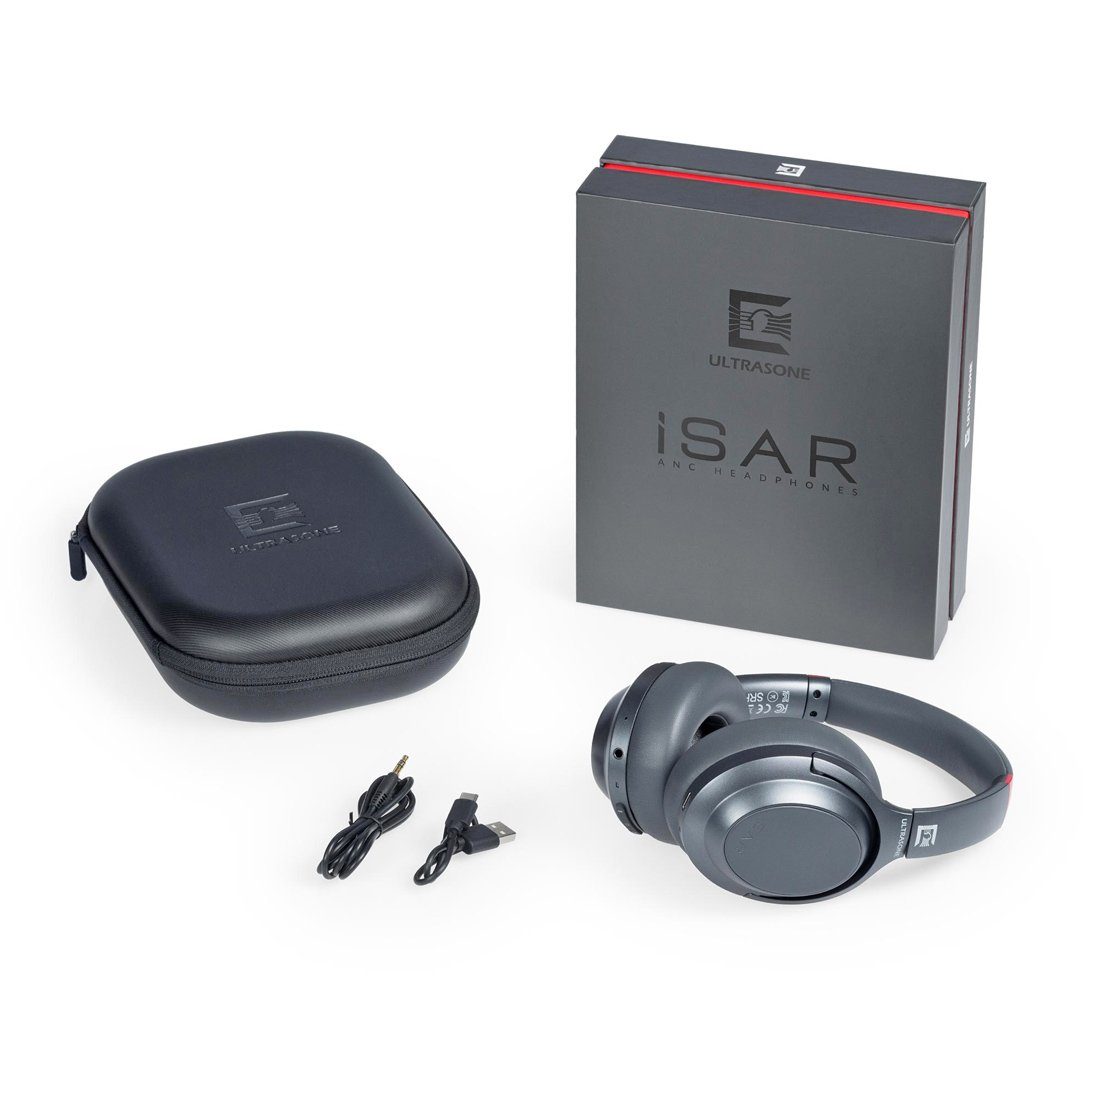 Tisch-Stativ Kopfhörer ISAR Ultrasone Ultrasone mit Kopfhörer